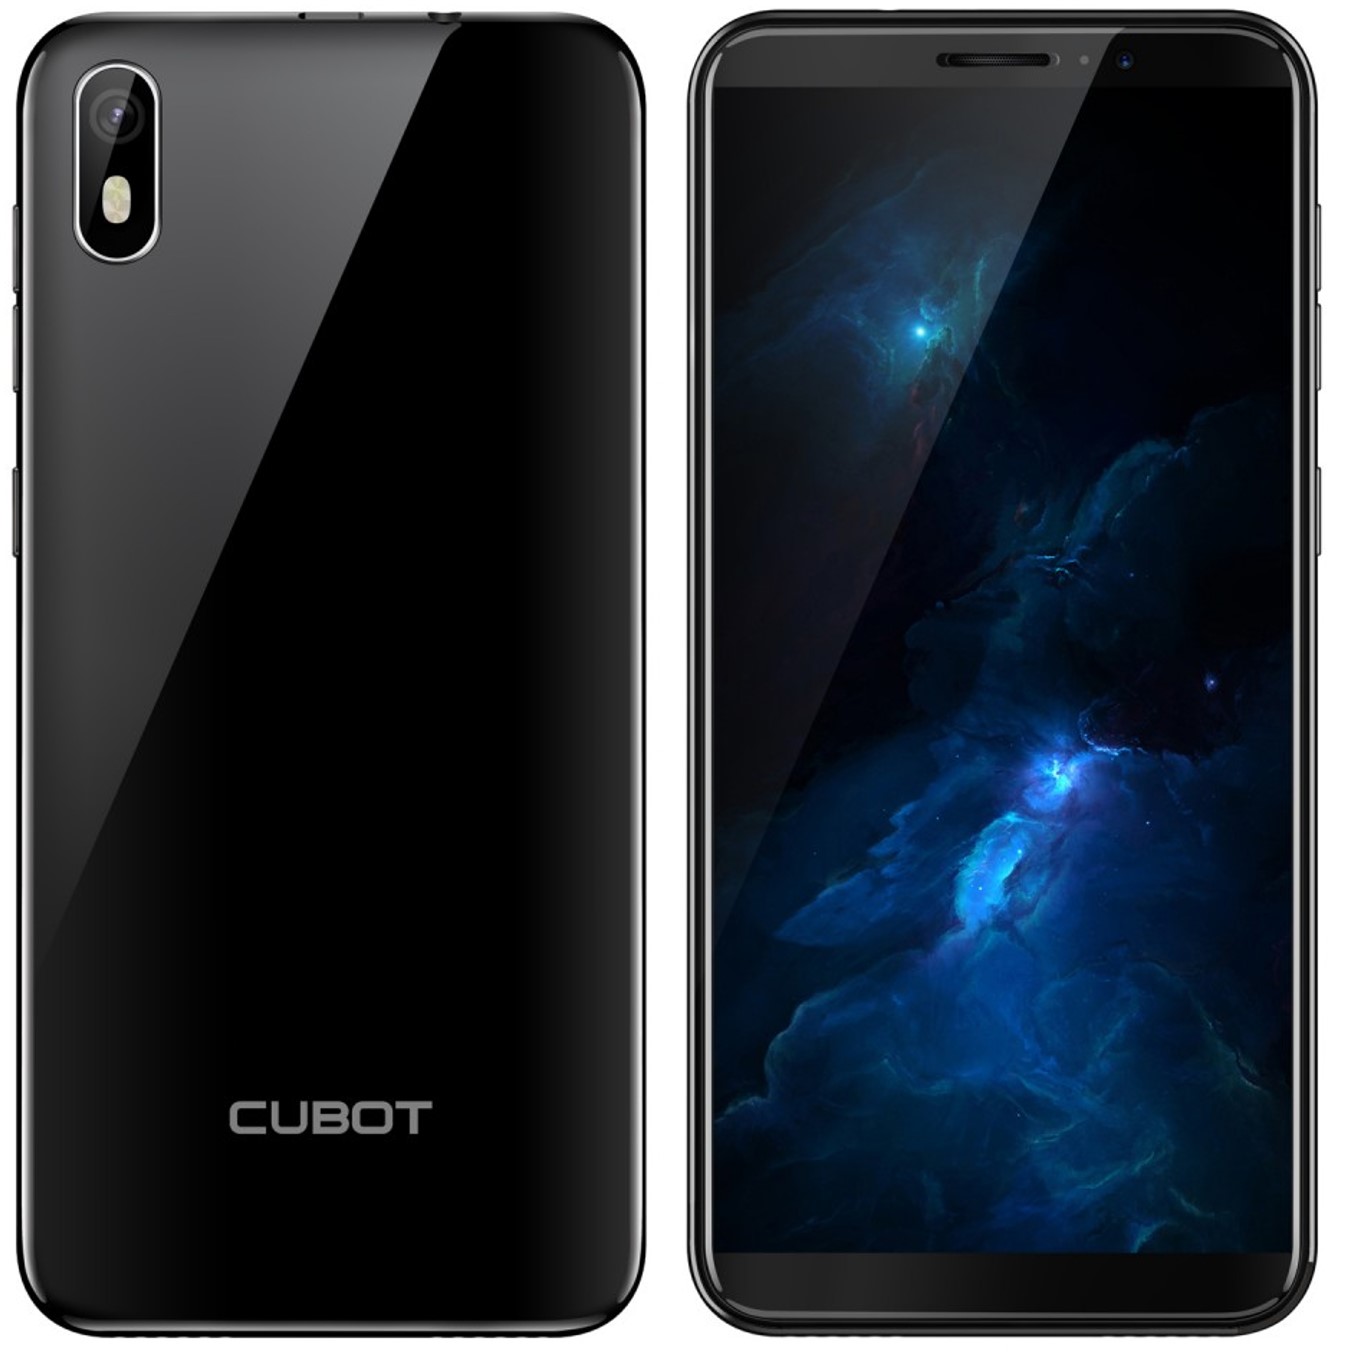 Telefono movil smartphone cubot j5 negro - 5.5pulgadas - 16gb rom - 2gb ram - 8mpx -  5mpx - quad core - dual sim - 3g